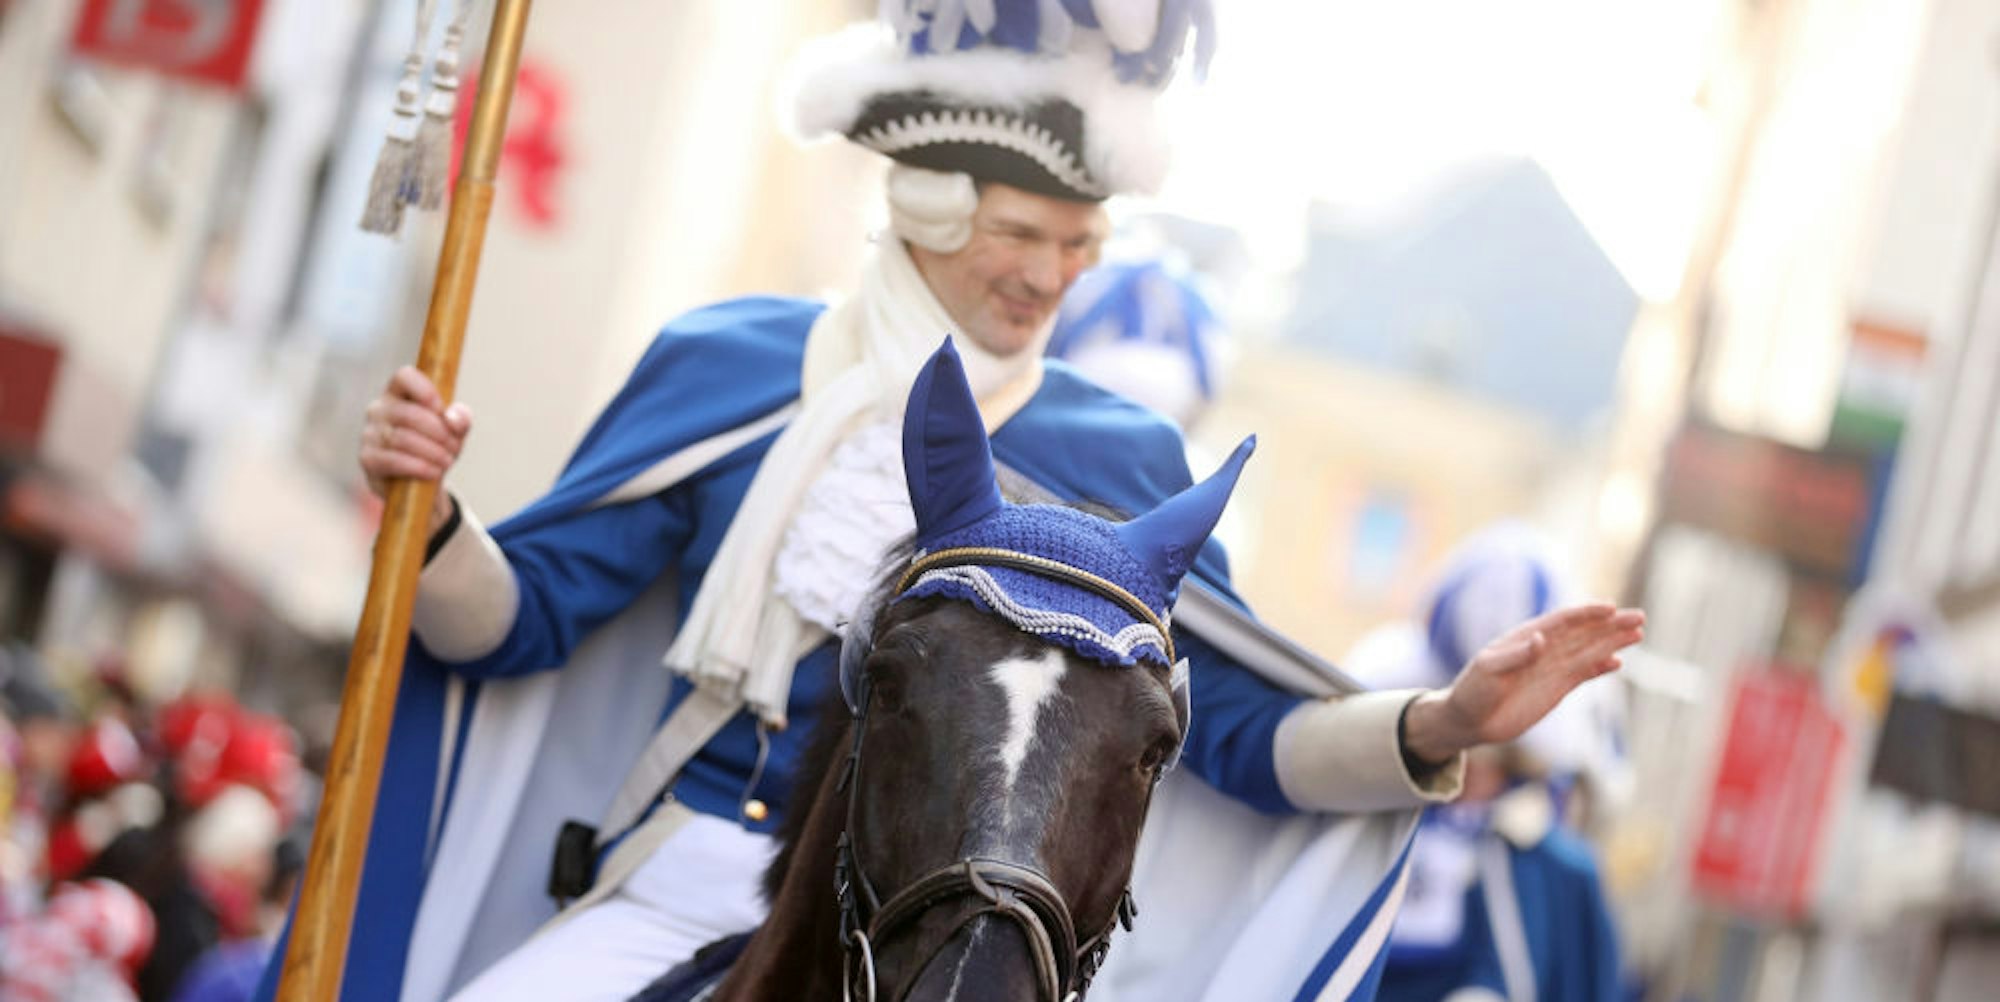 Reiter und Pferd im Karneval. (Symbolbild)